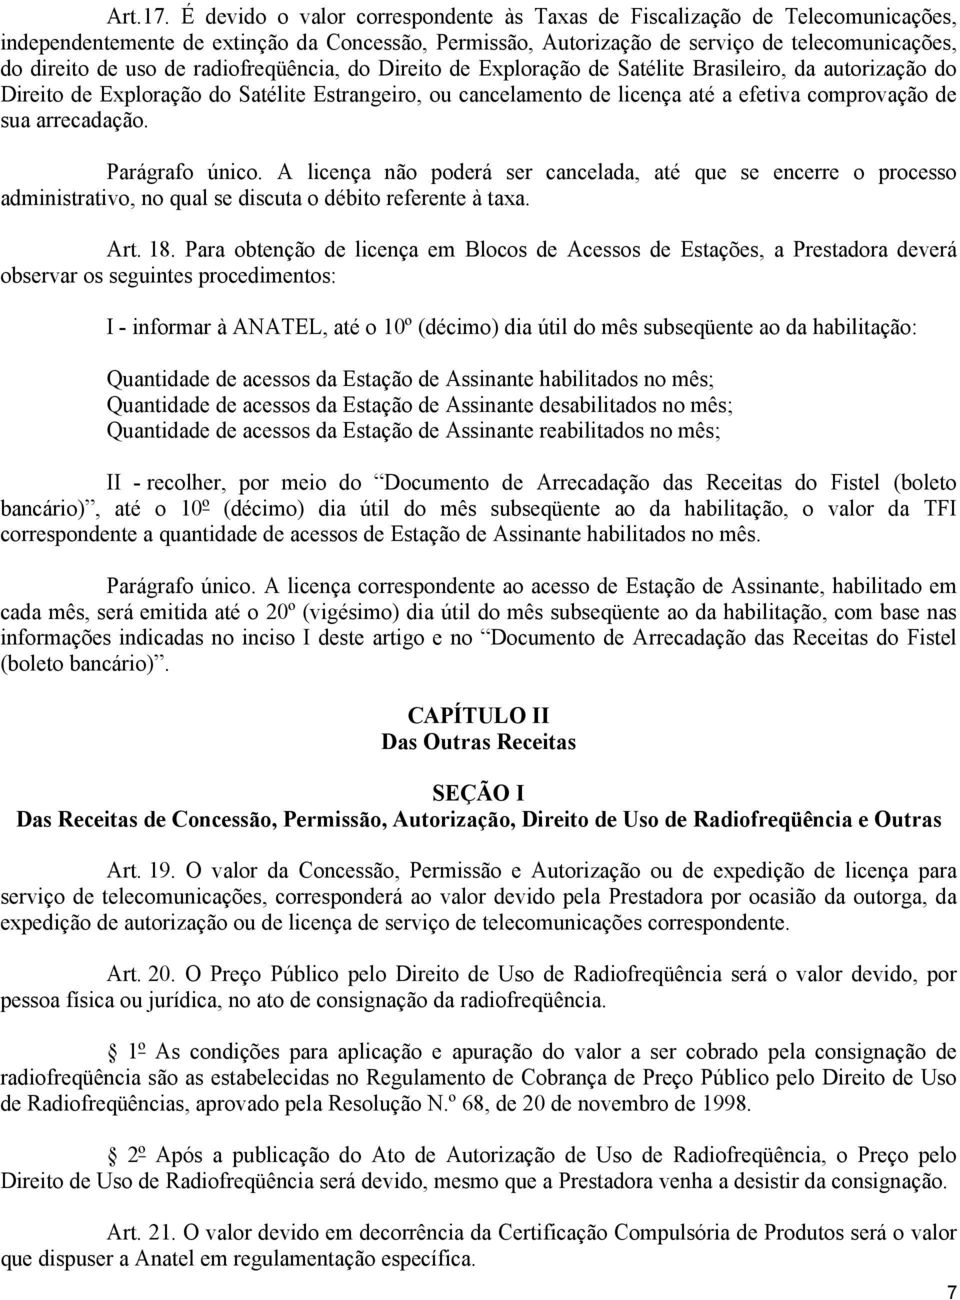 radiofreqüência, do Direito de Exploração de Satélite Brasileiro, da autorização do Direito de Exploração do Satélite Estrangeiro, ou cancelamento de licença até a efetiva comprovação de sua